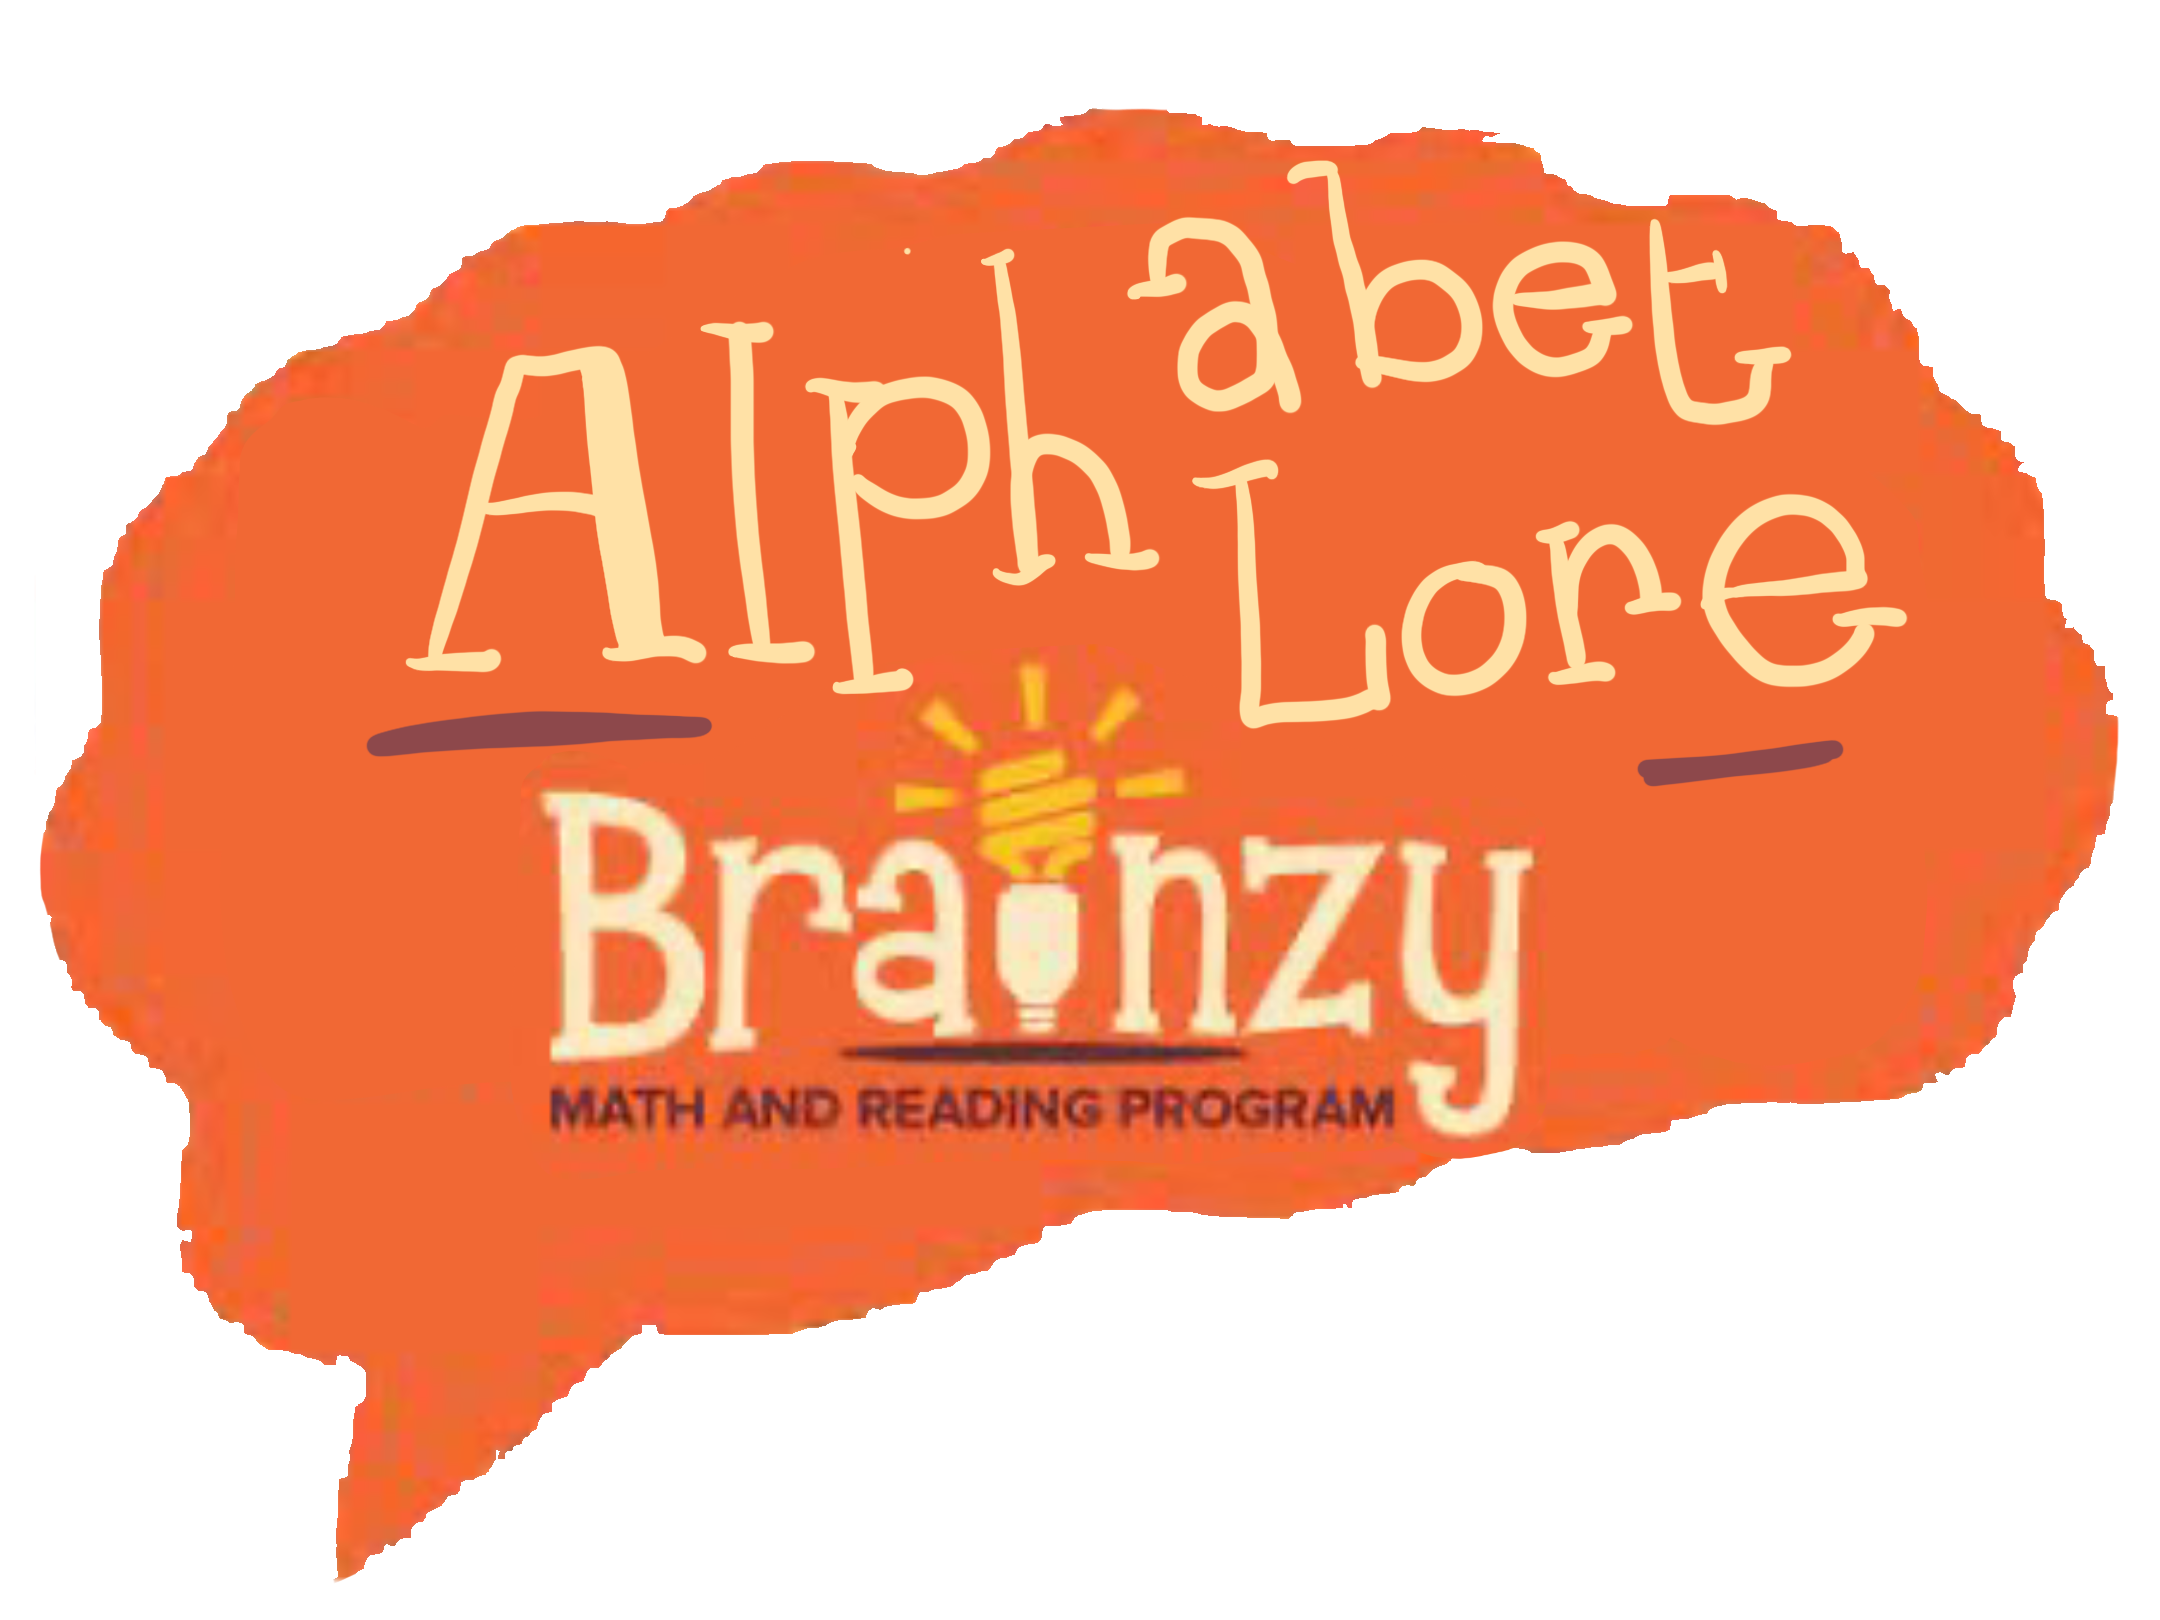 Alphabet Lore Brainzy Logo (NEW) by Extranimals on DeviantArt